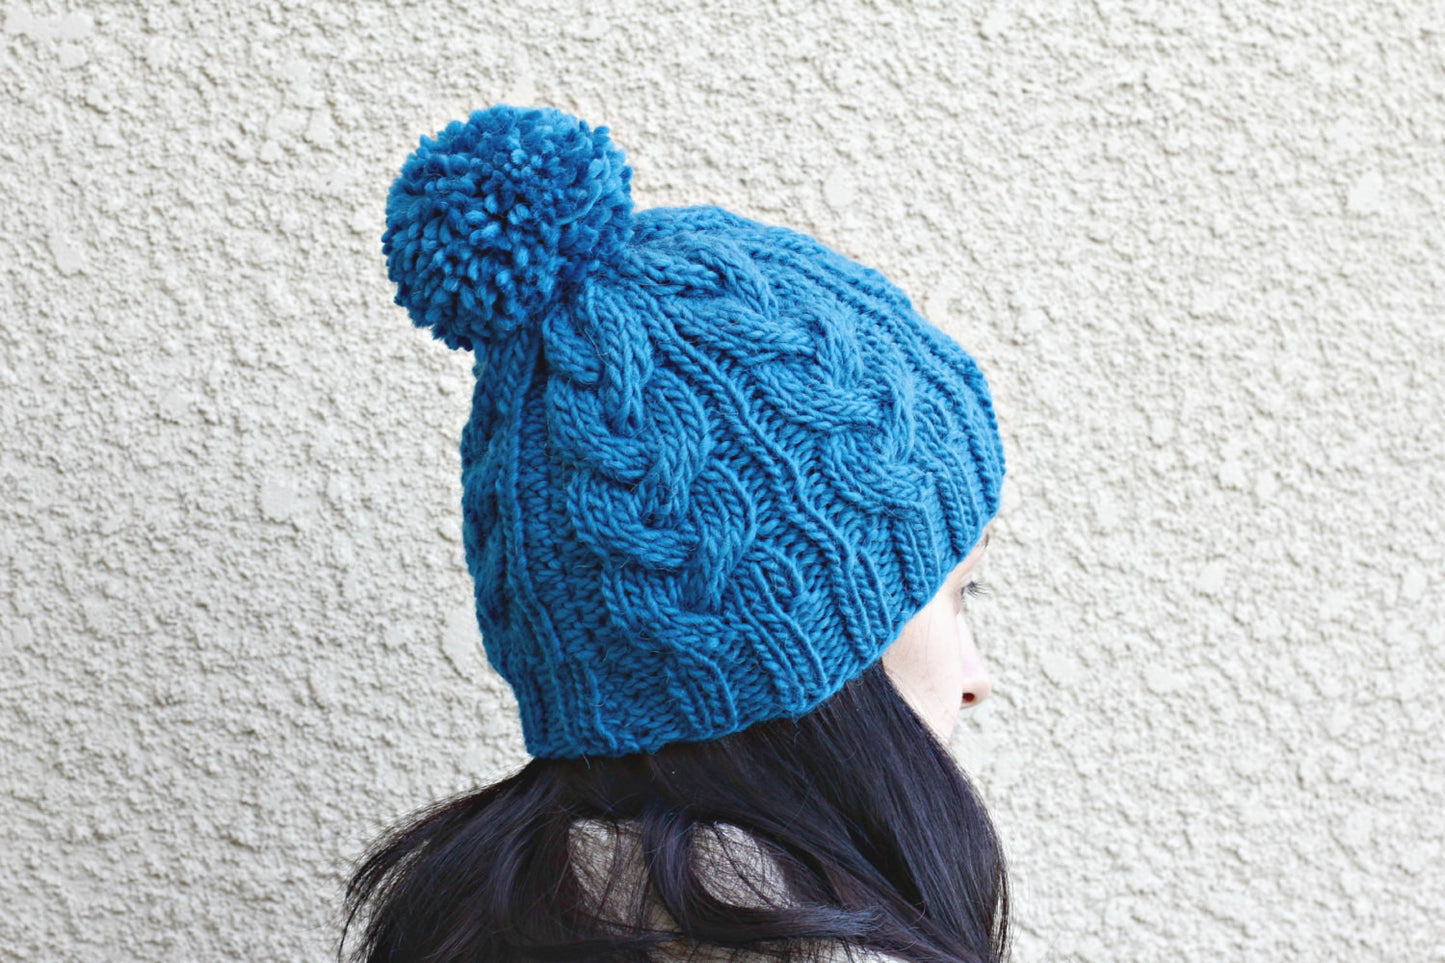 Dark blue knitted hat